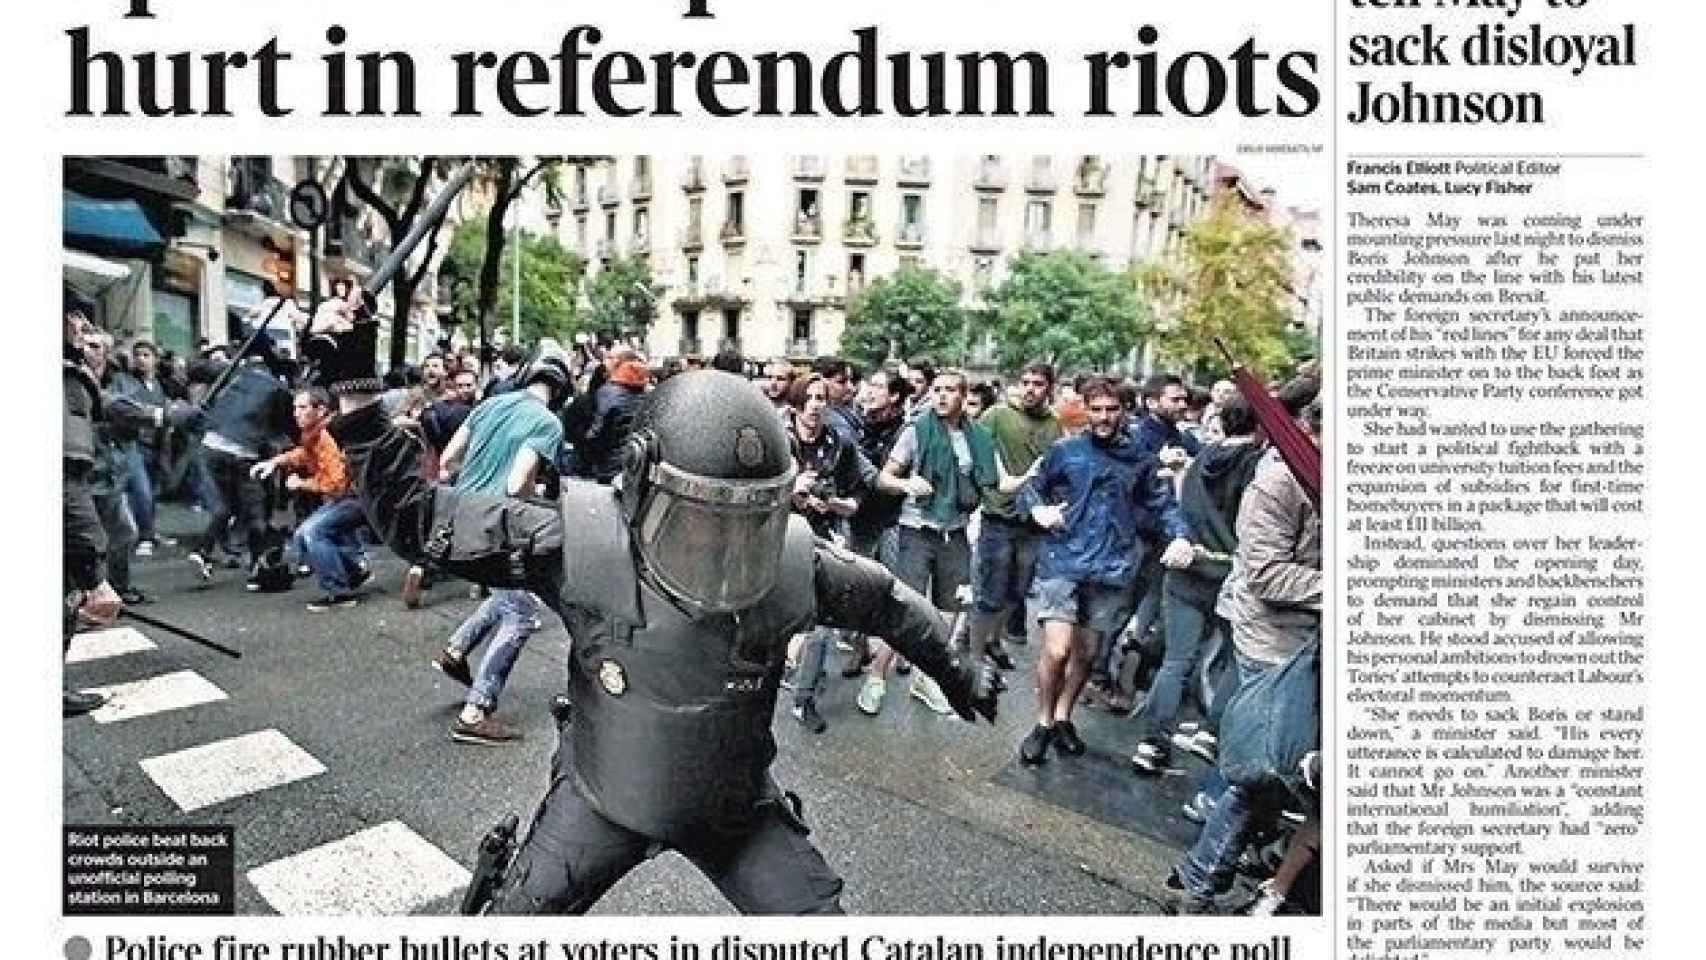 La portada de 'The Times' recoge una gran foto de un policía golpeando a manifestantes en una calle de Barcelona / EUROPA PRESS